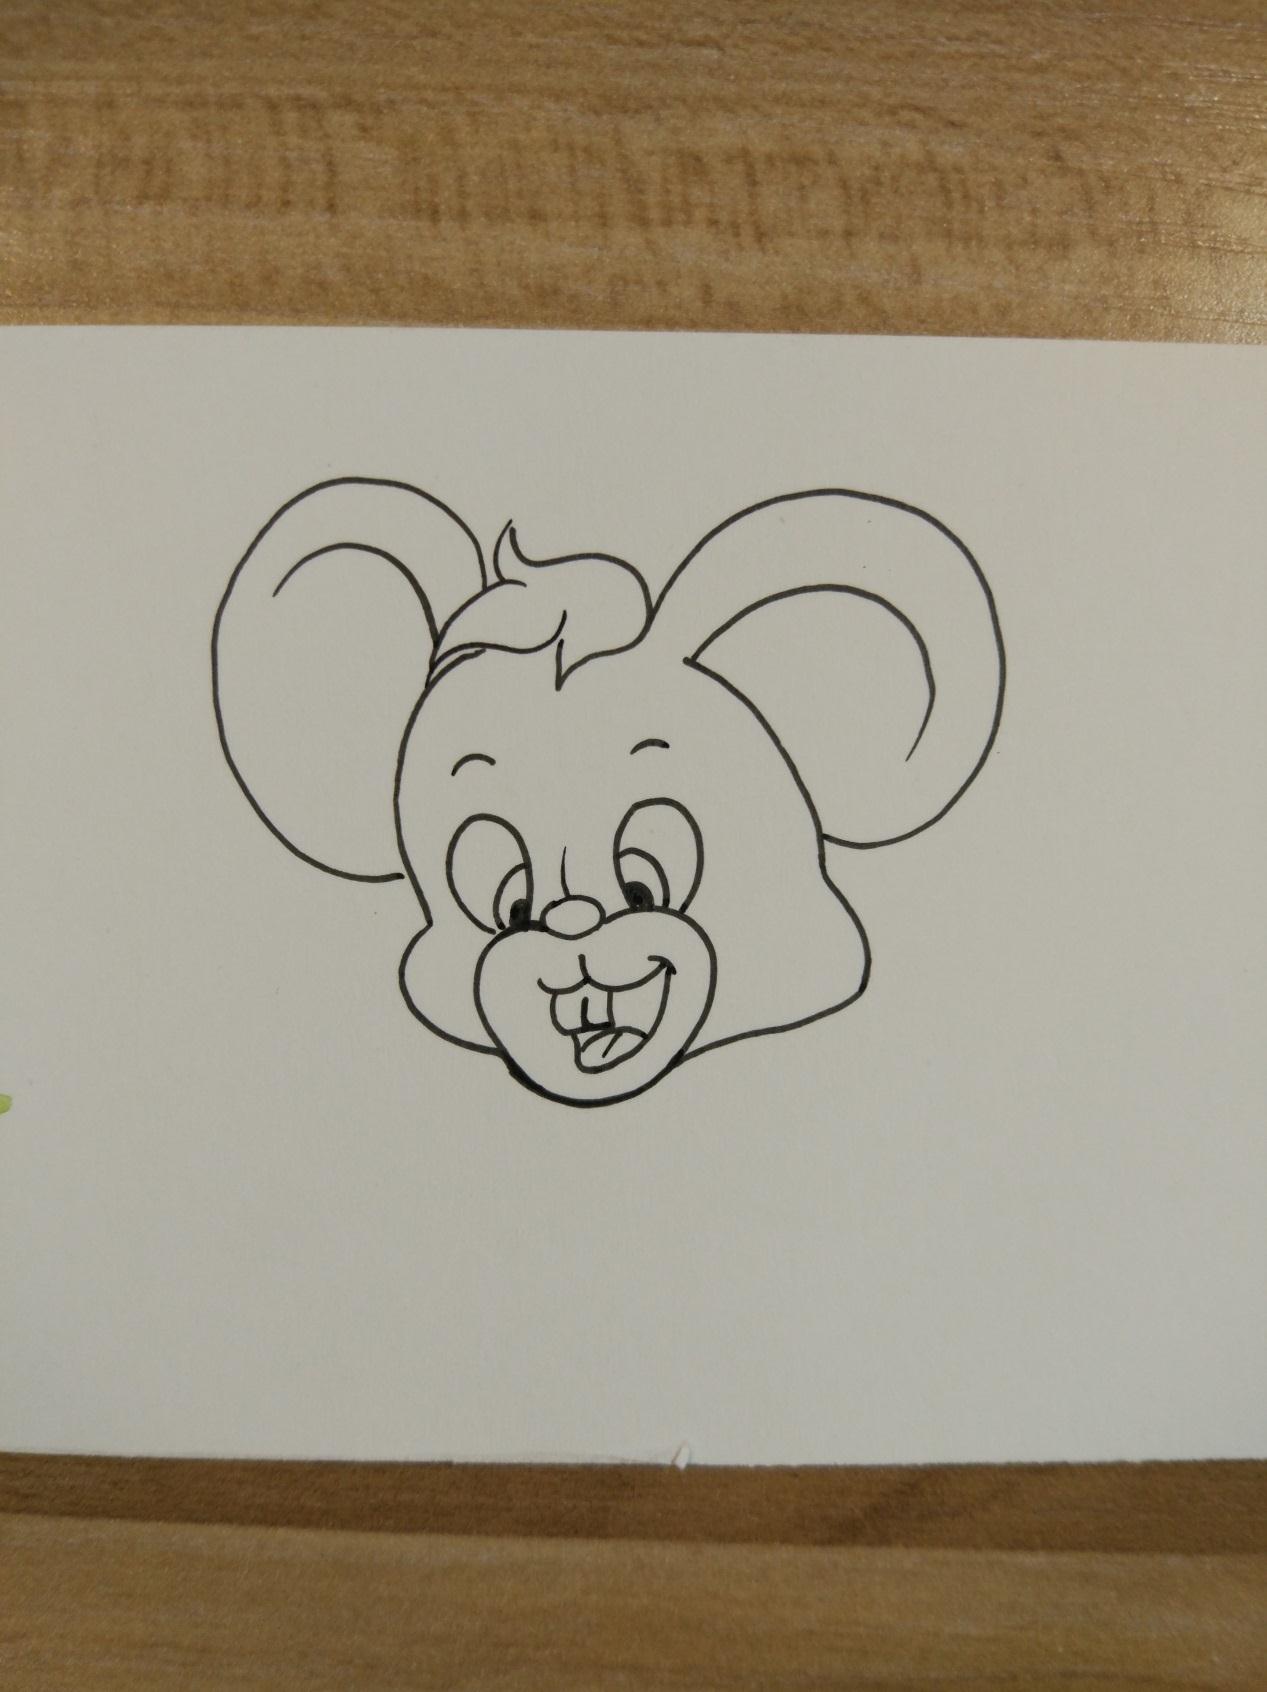 宋宋原创DIY漫画作品之可爱的小老鼠画法步骤图